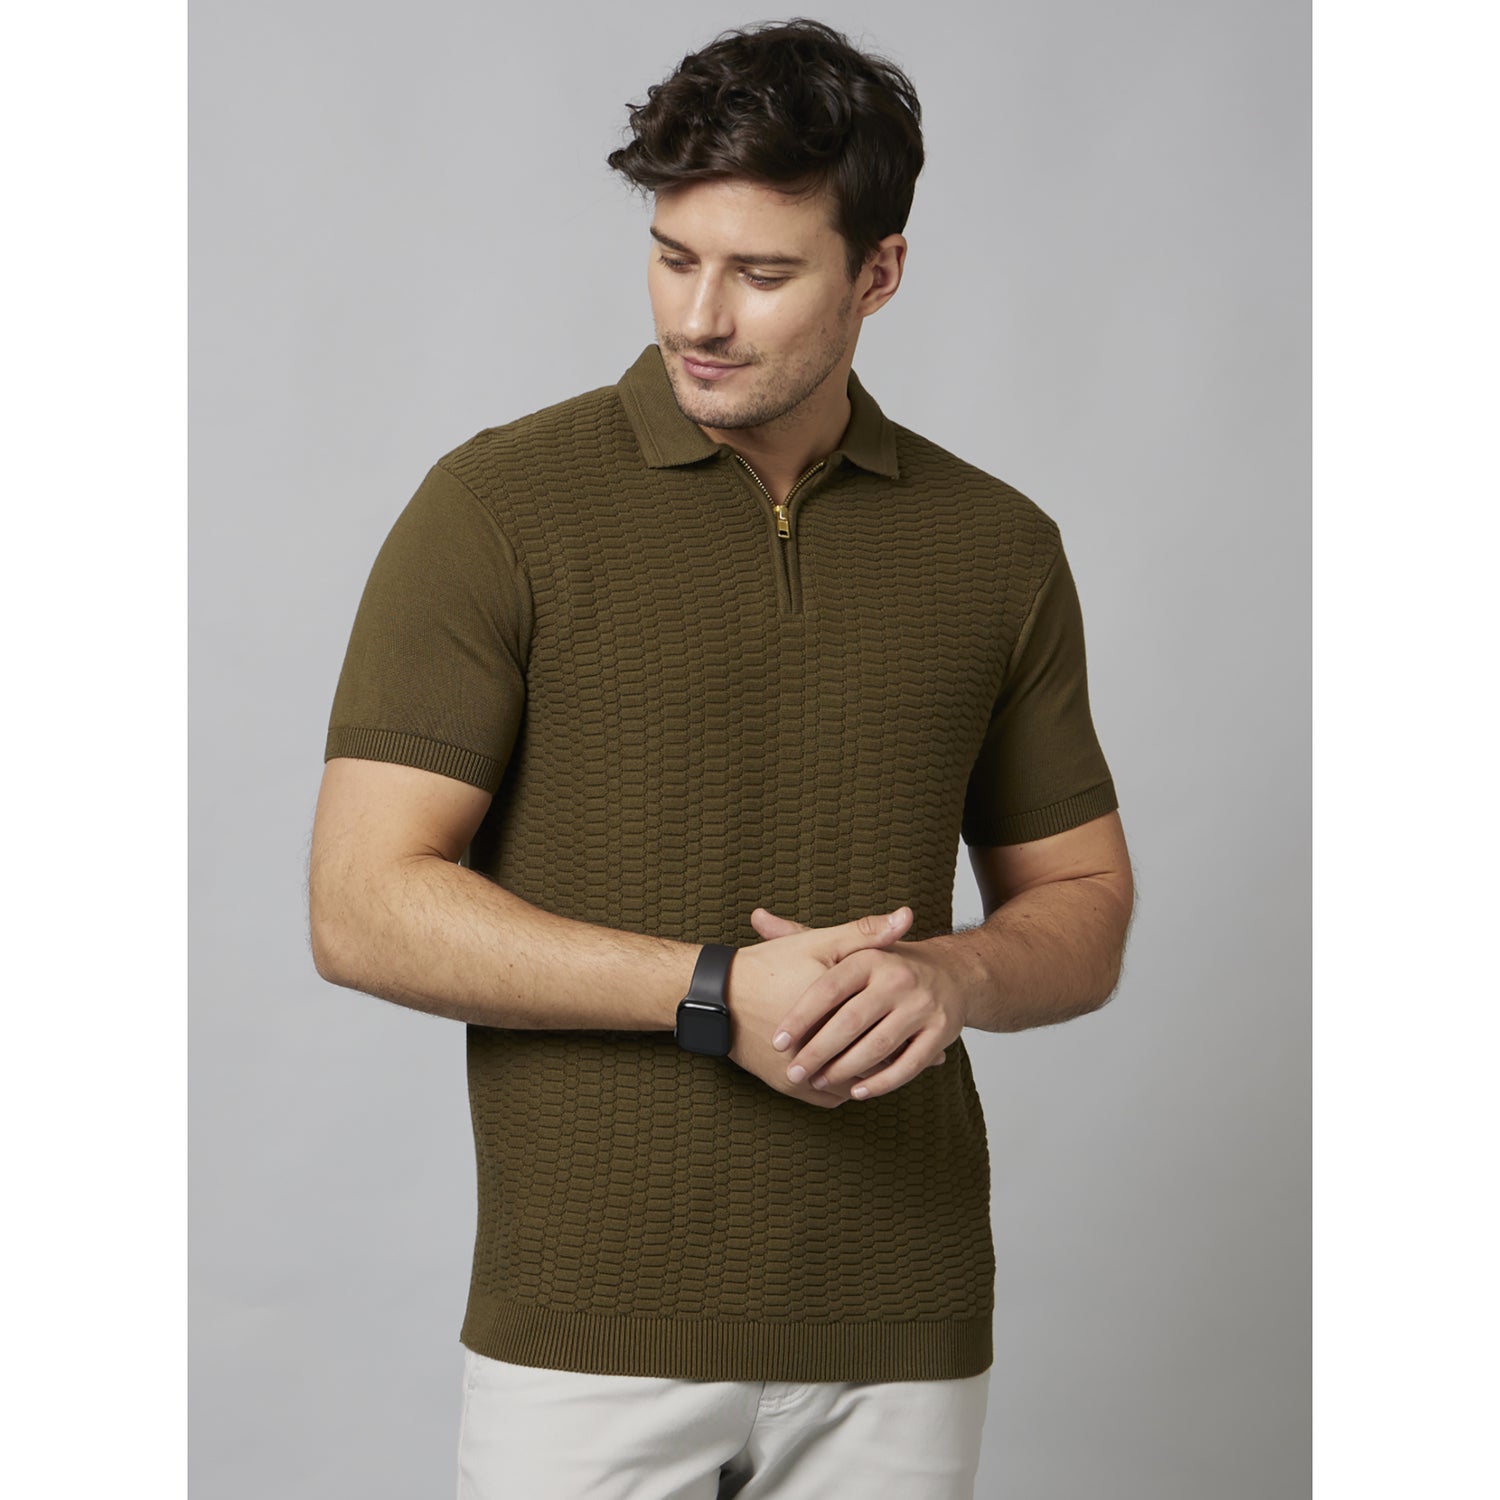 Dark Brown Self Design Short Sleeve Cotton T-Shirts (DEJACK)